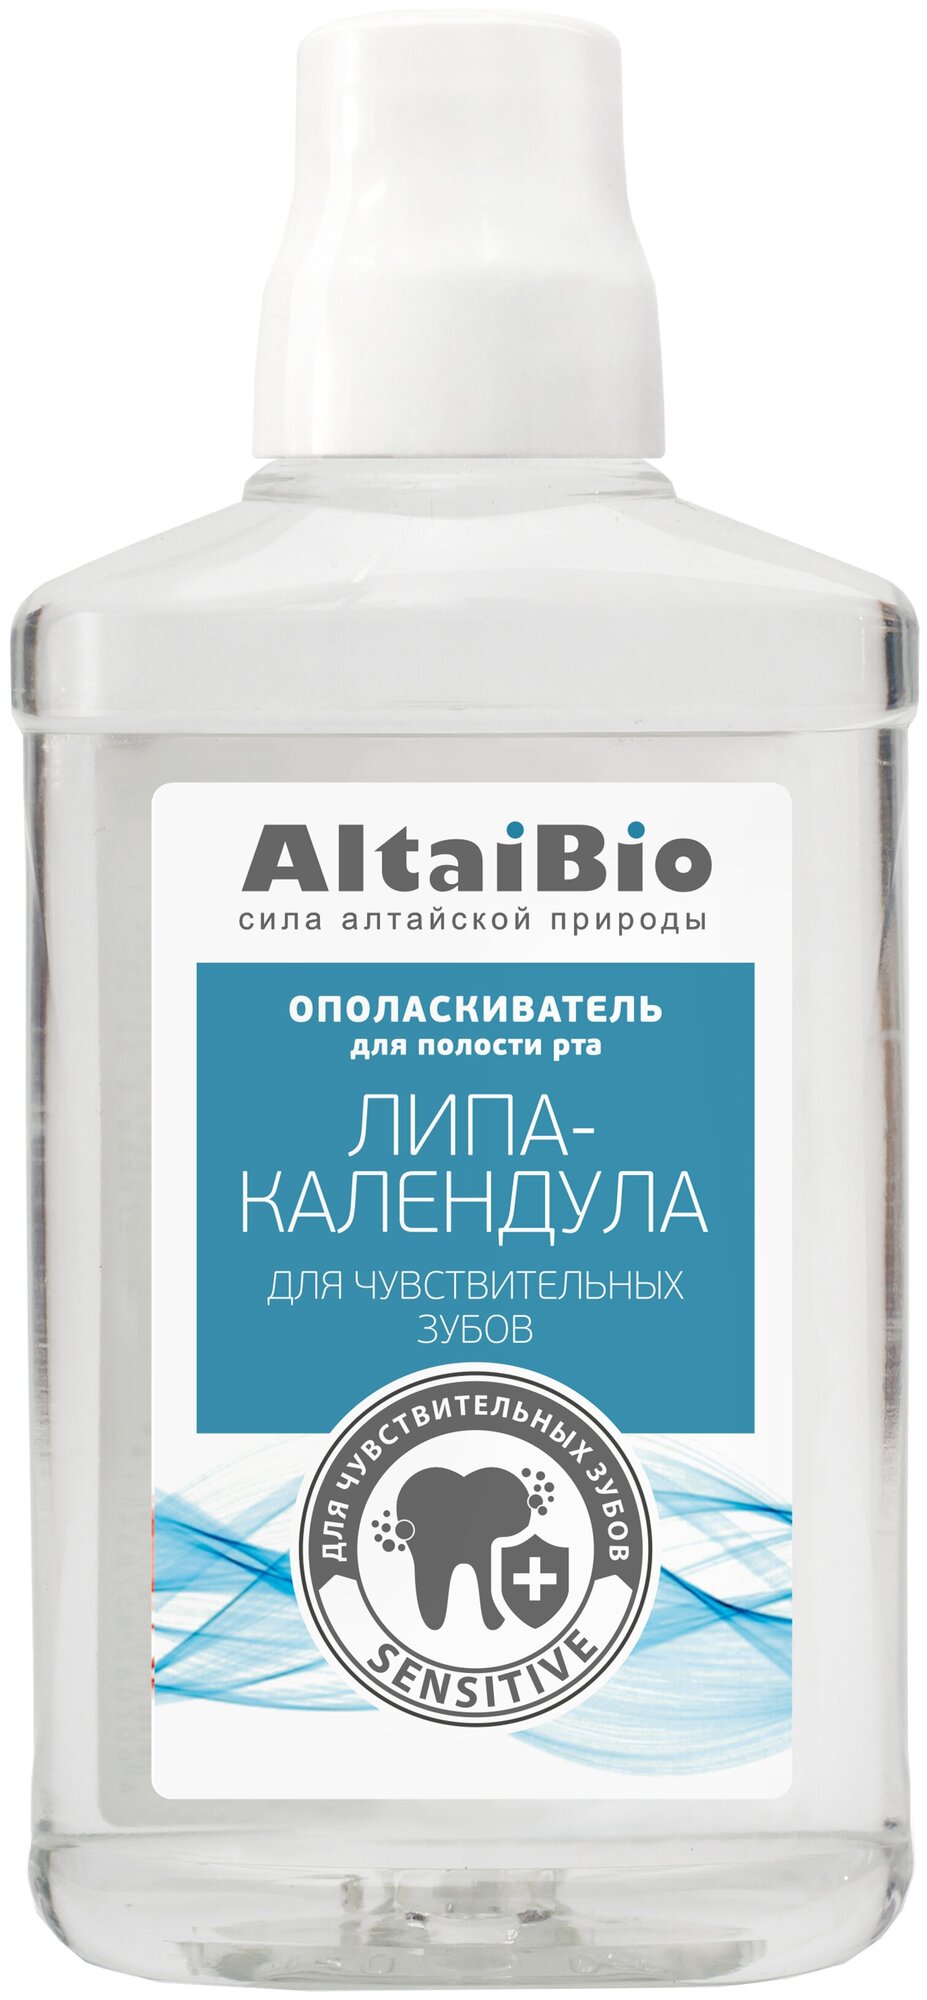 AltaiBio Ополаскиватель для полости рта для чувствительных зубов "Липа-календула", 400 мл (AltaiBio, ) - фото №1